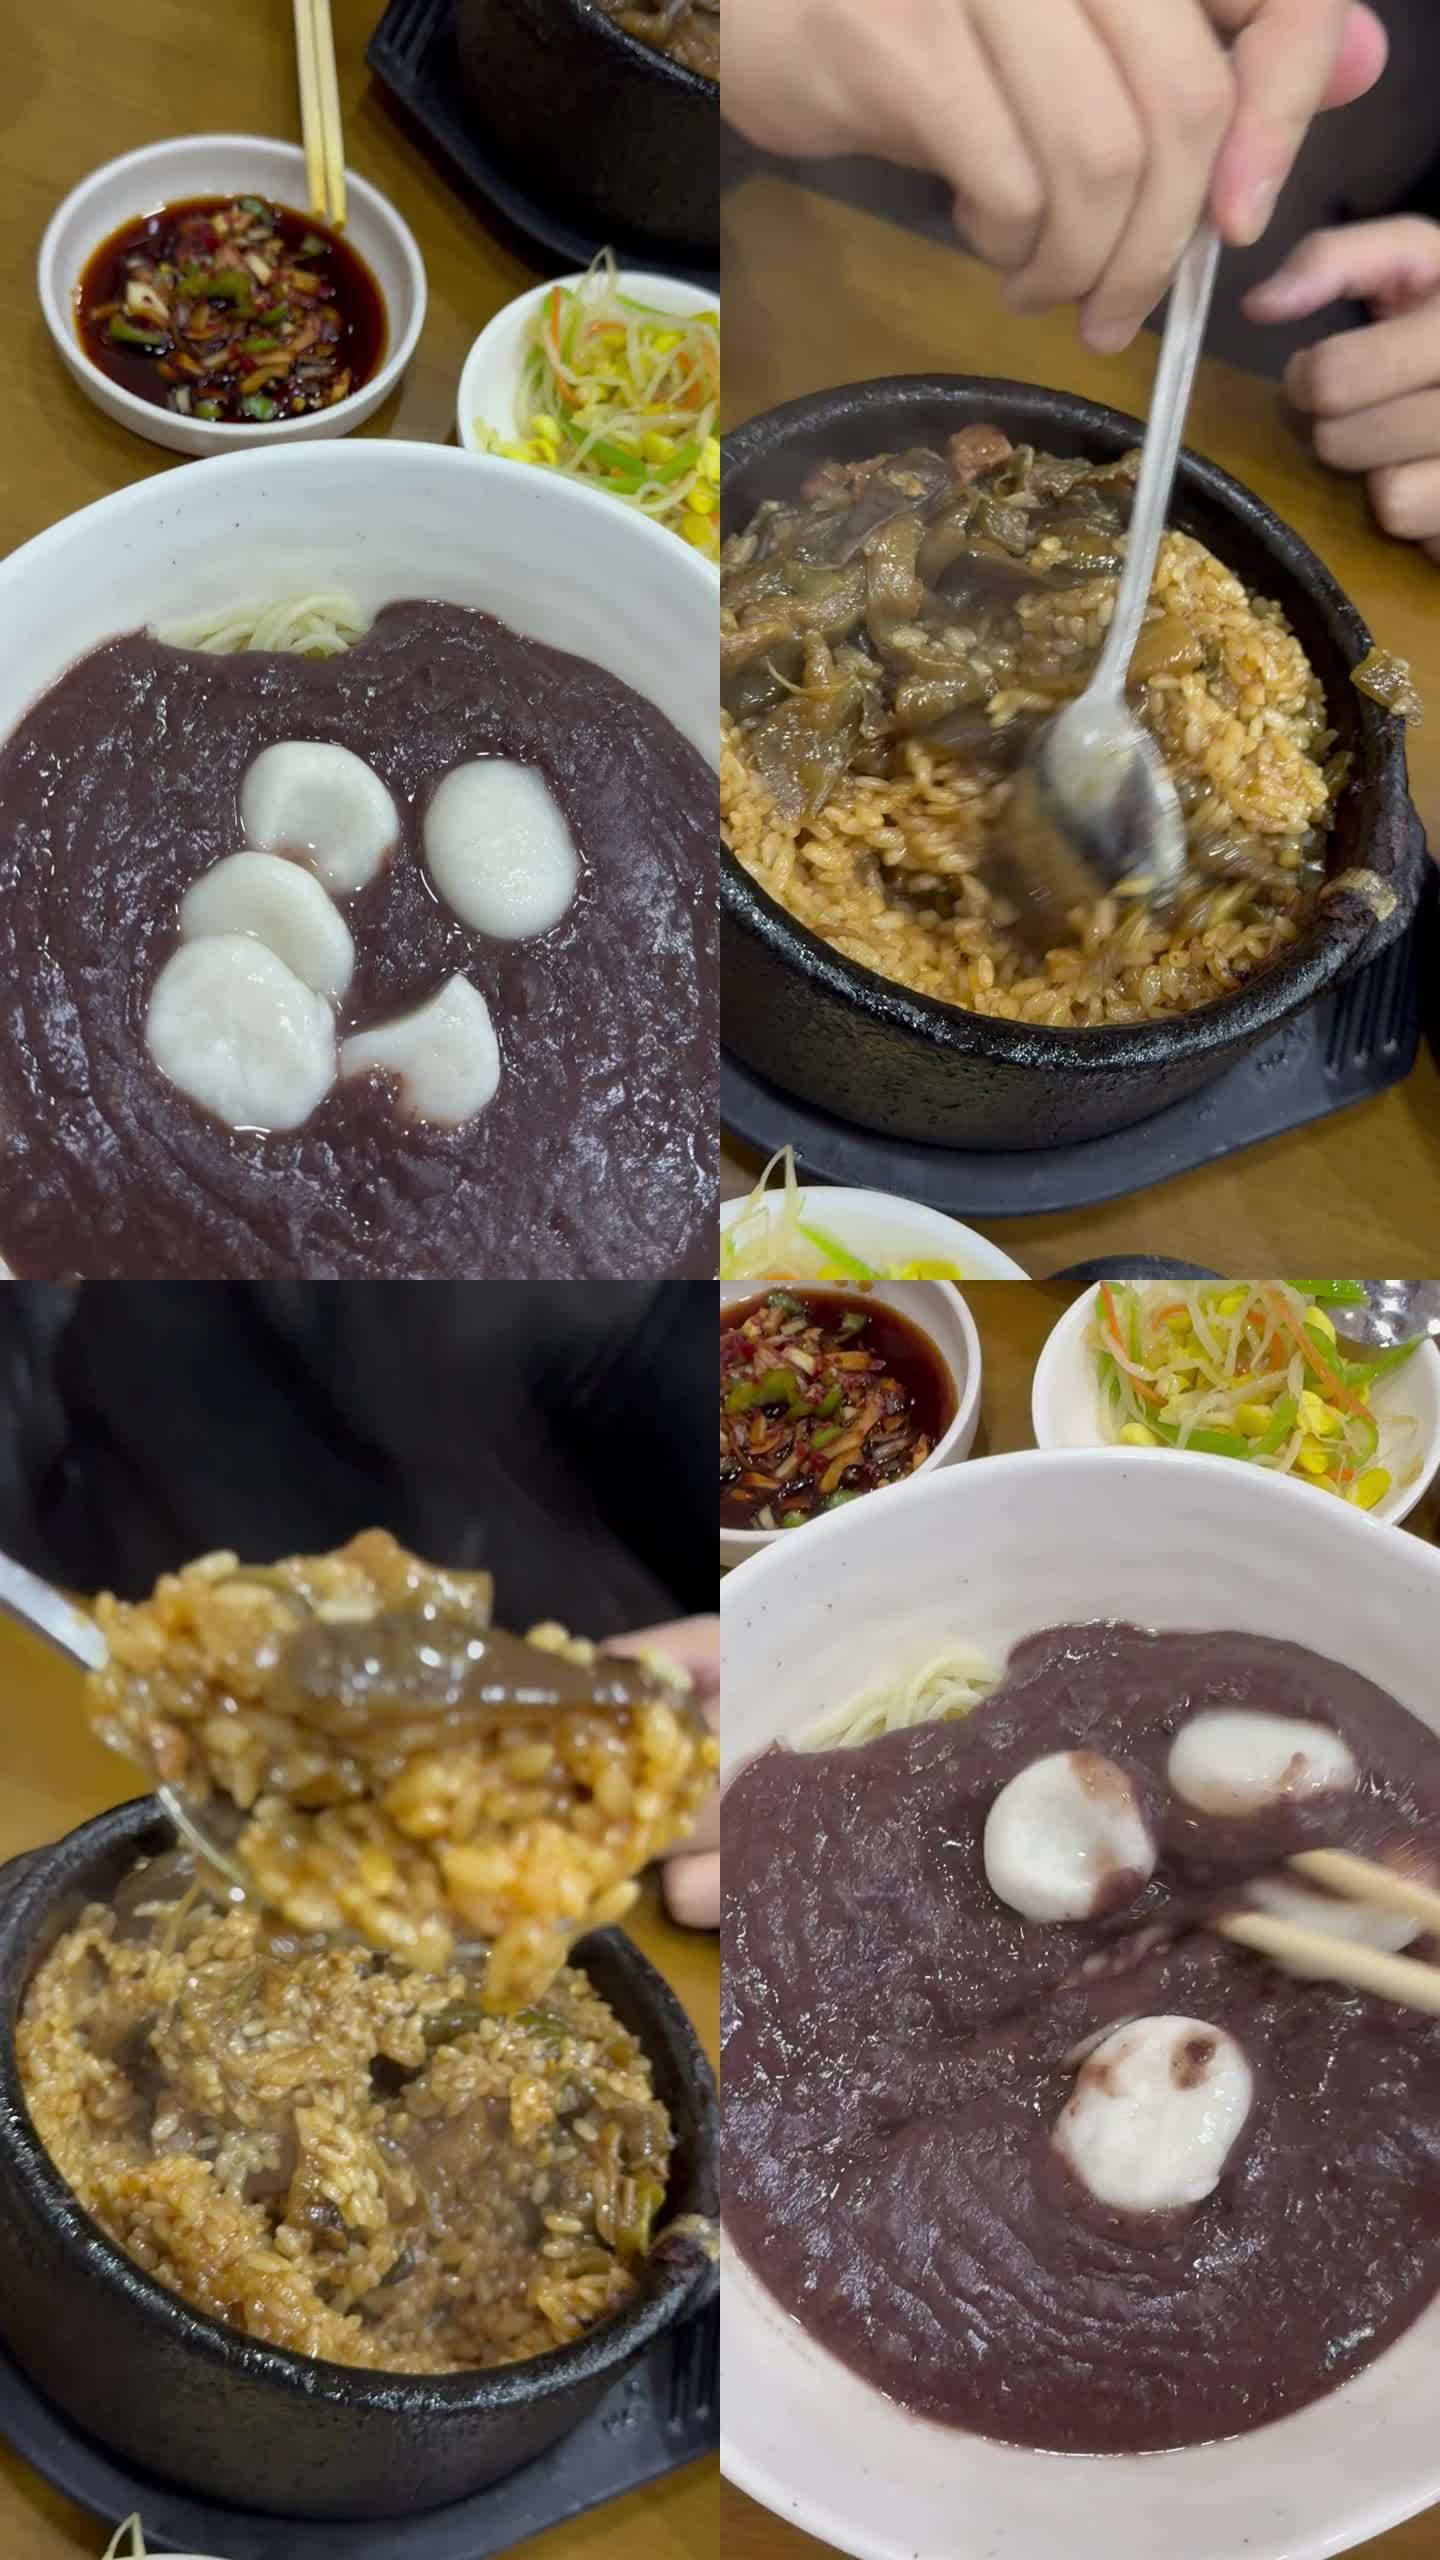 实拍延吉朝鲜族特色美食茄子石锅饭红豆拌面